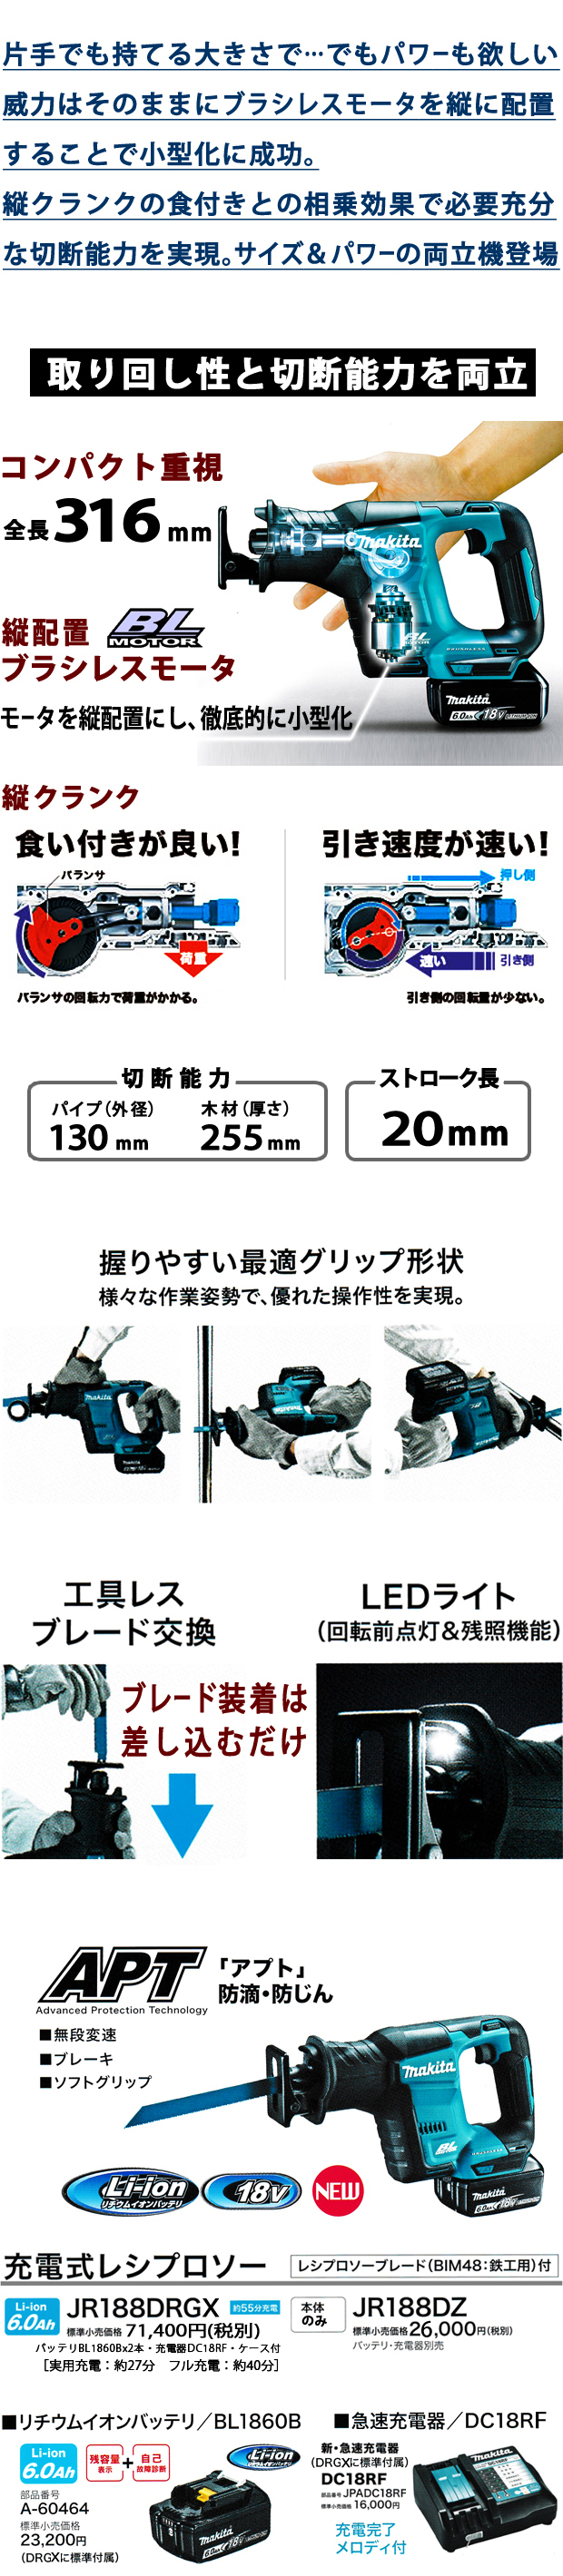 マキタ 18V 充電式レシプロソー JR188D 電動工具・エアー工具・大工